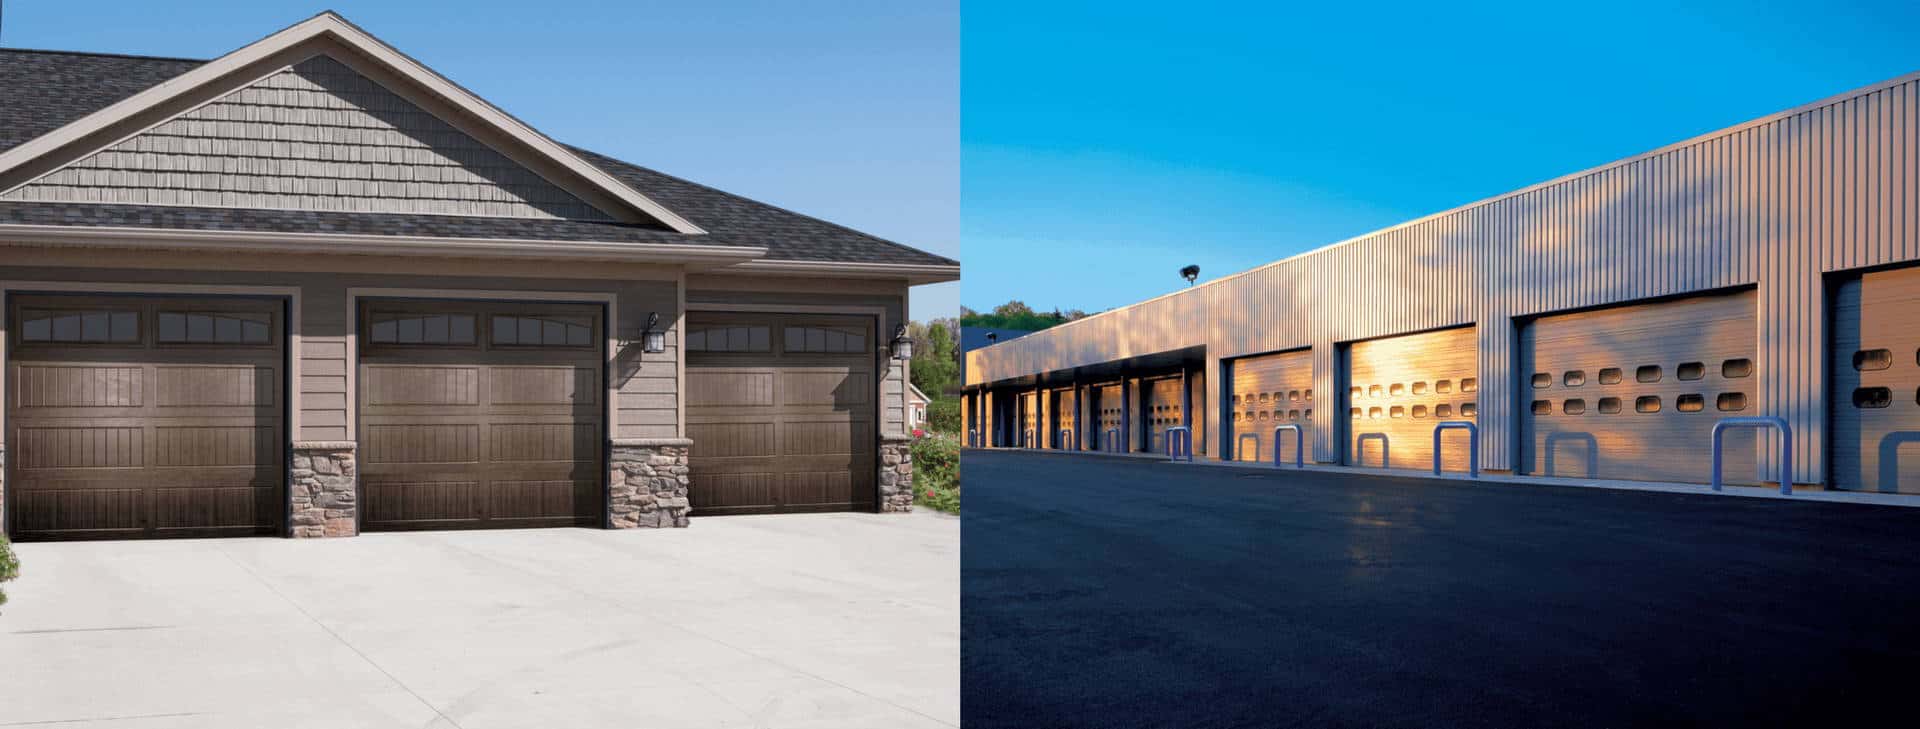 residential garage door and commercial garage door